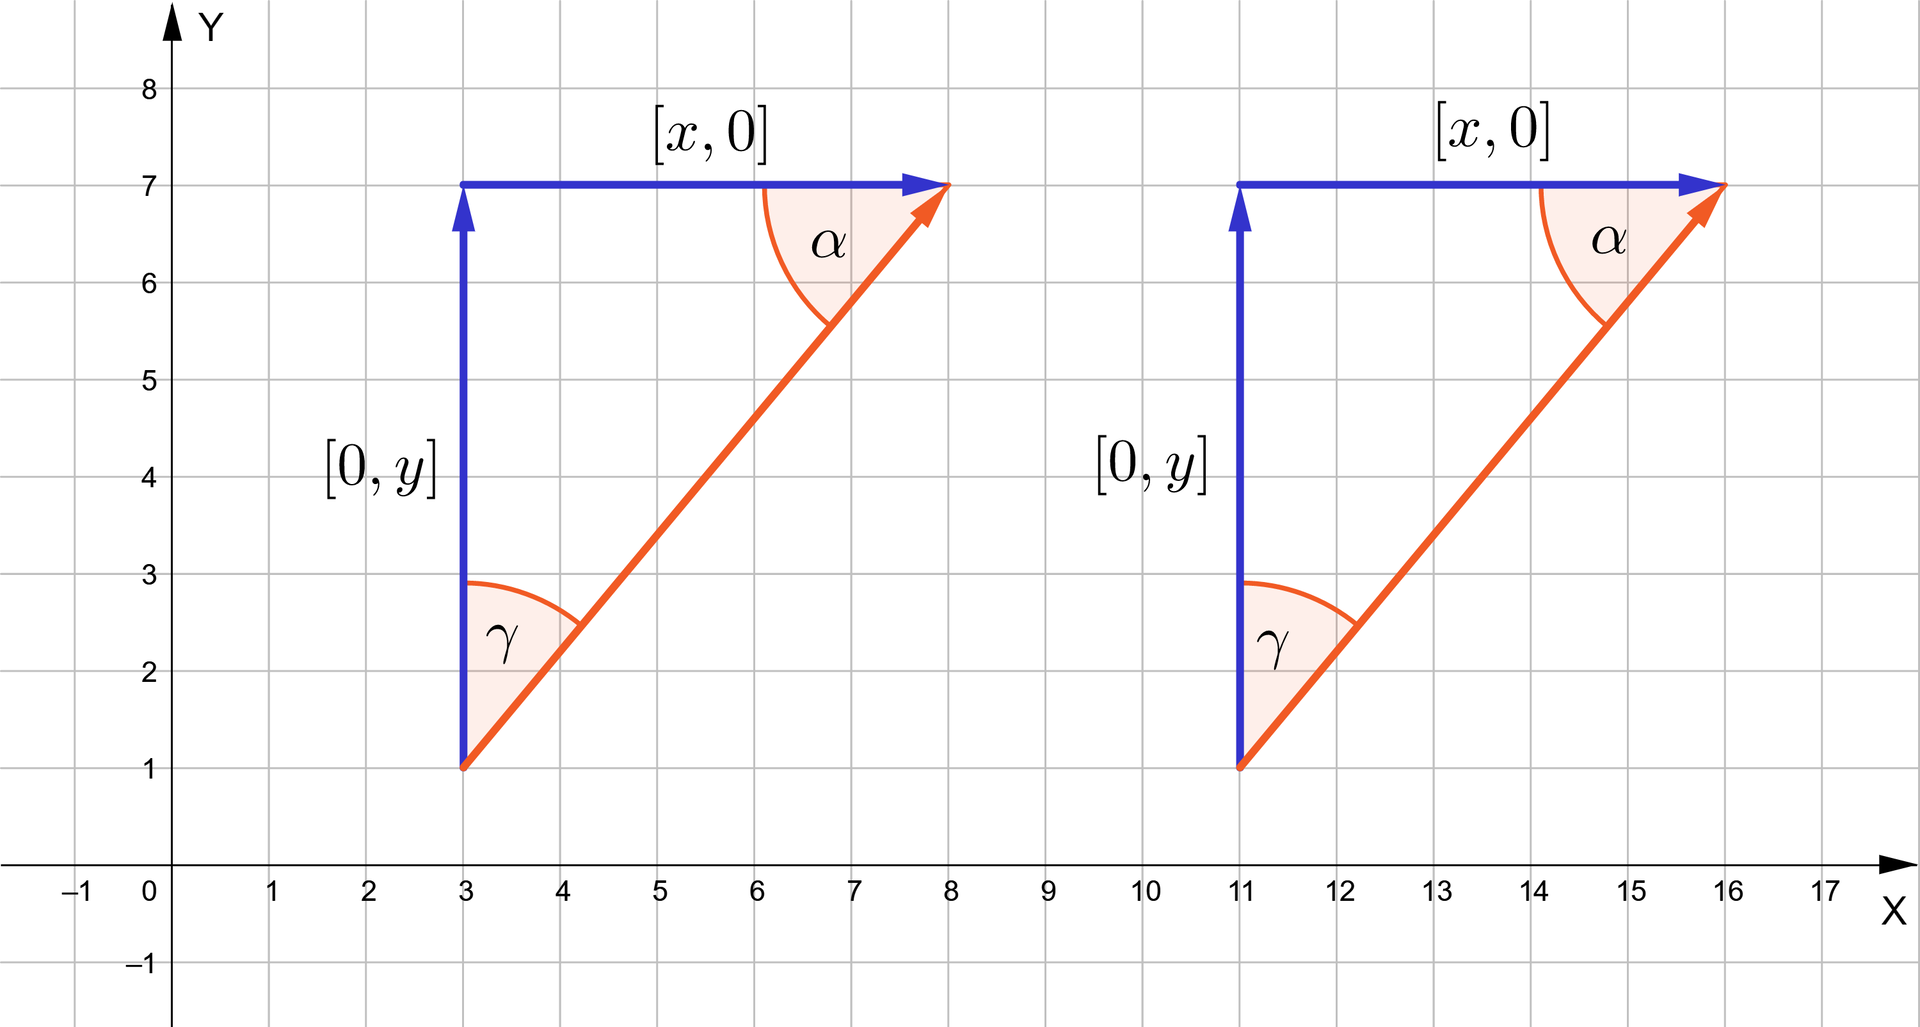 Ilustracja przedstawia układ współrzędnych. Oś pozioma została oznaczona jako X, oś pionowa jako Y. Na osi X znajdują się liczby z zakresu od minus 1 do 17, natomiast na osi Y od minus 1 do osiem. Na układ współrzędnych naniesiono w dwóch punktach wektor o współrzędnych 5;6. Jeden z nich zaczepiono w punkcie 3;1, drugi w 11;1. Każdy z wektorów rozłożono na wektor poziomy x;0 i pionowy 0;y. Powstały dwa identyczne trójkąty prostokątne. W obu trójkątach zaznaczono kąty przy najdłuższym boku: alfa oraz gamma.